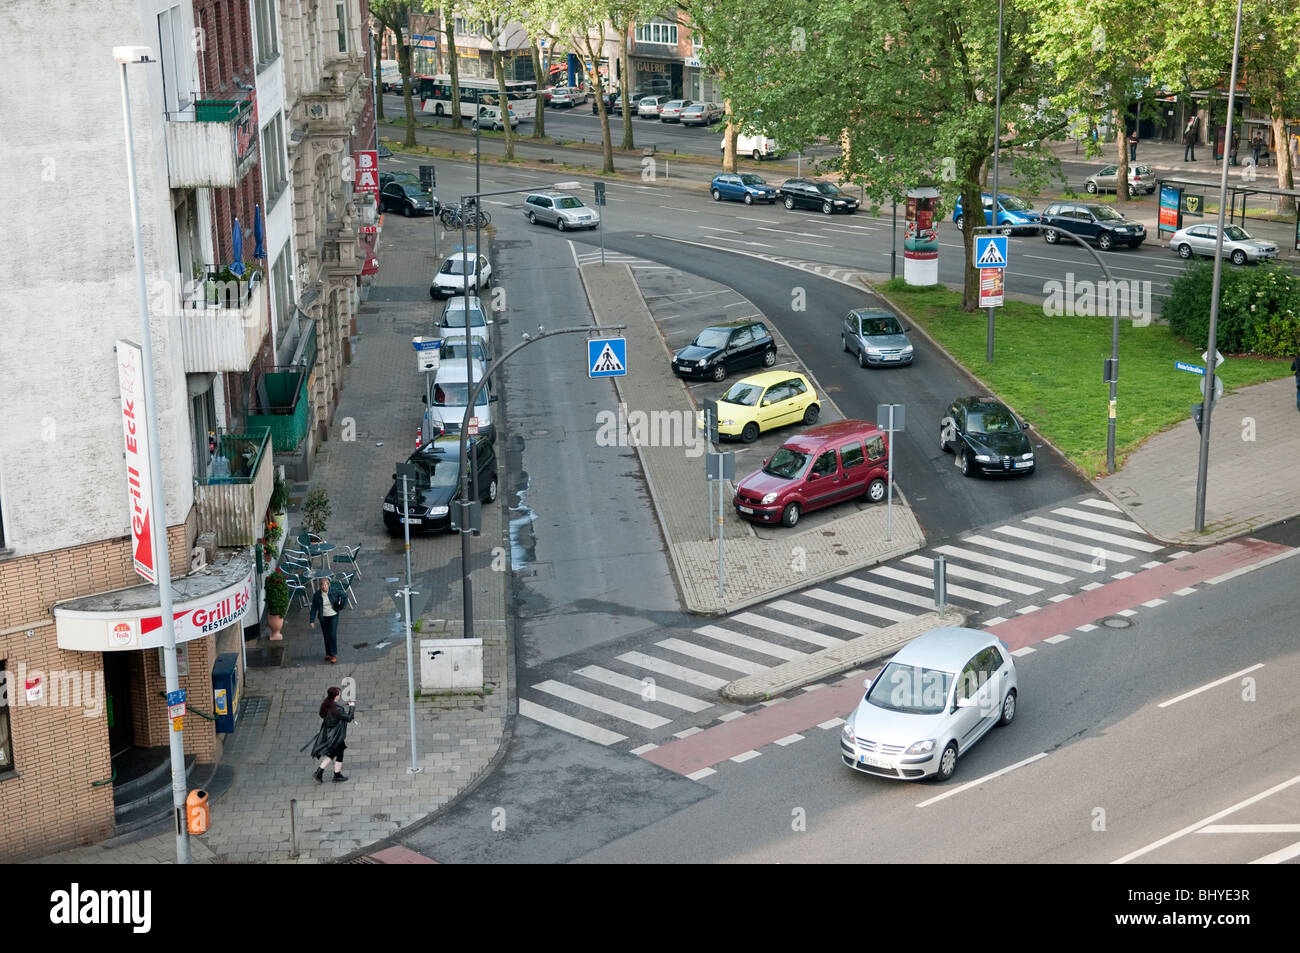 Street scene in Aachen Germany Stock Photo